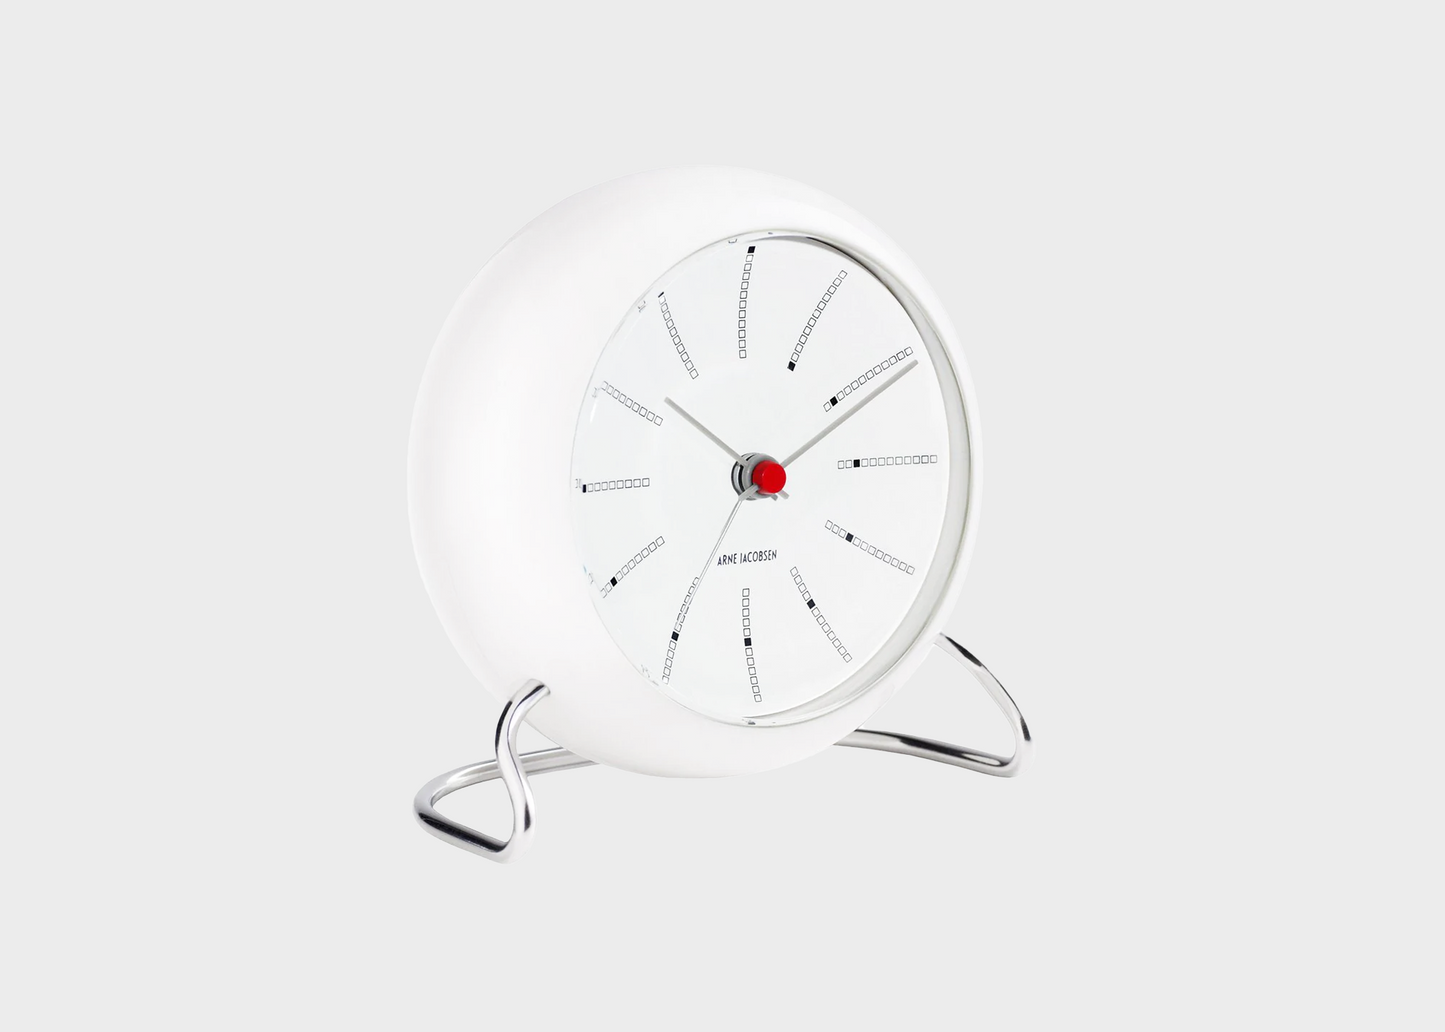 A white banker's alarm clock by designer Arne Jacobsen tilted to the side